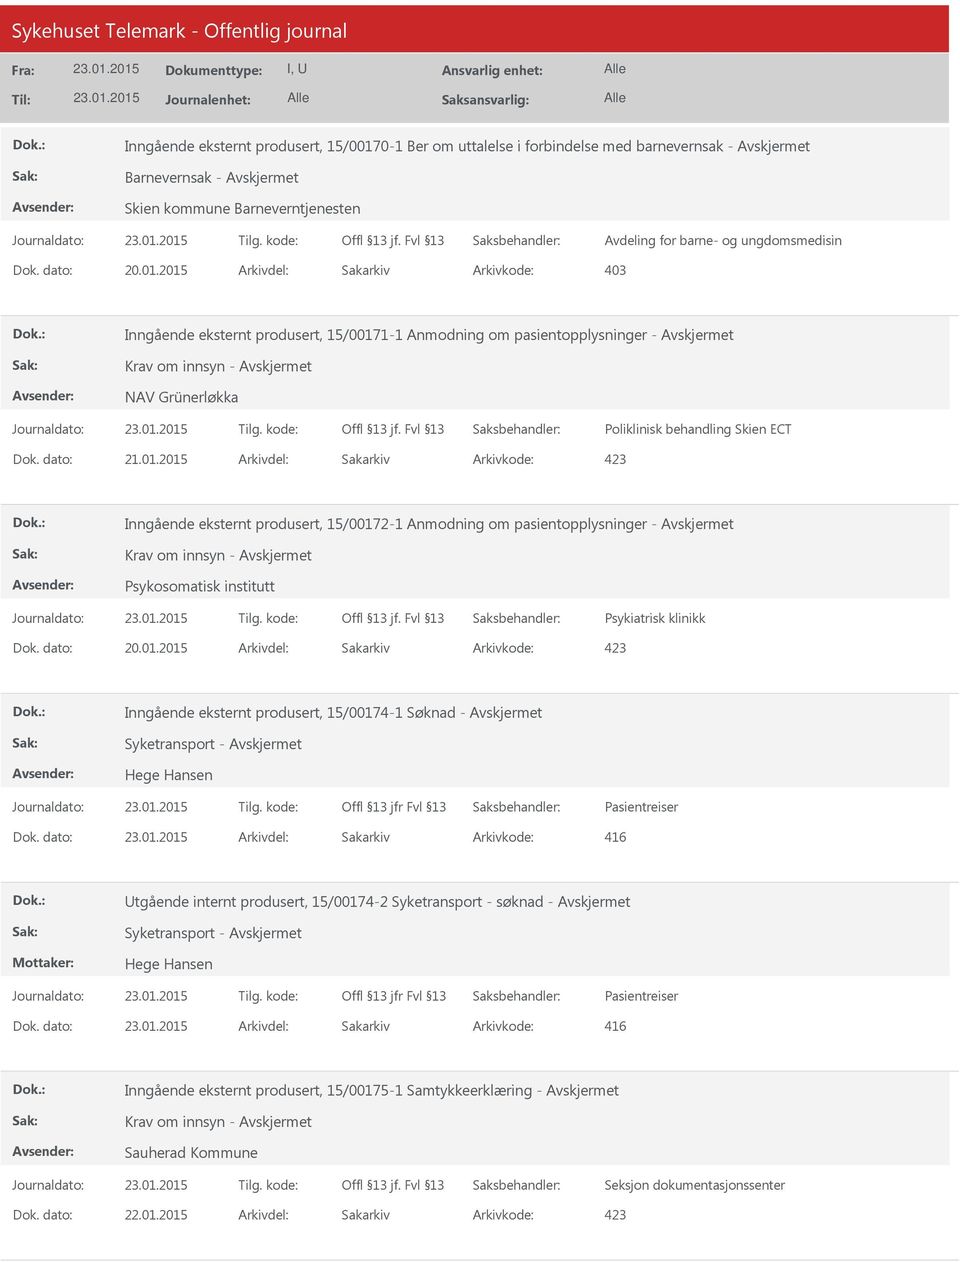 2015 Arkivdel: Sakarkiv 1-1 Anmodning om pasientopplysninger - Krav om innsyn - NAV Grünerløkka Poliklinisk behandling Skien ECT 2-1 Anmodning om pasientopplysninger - Krav om innsyn - Psykosomatisk